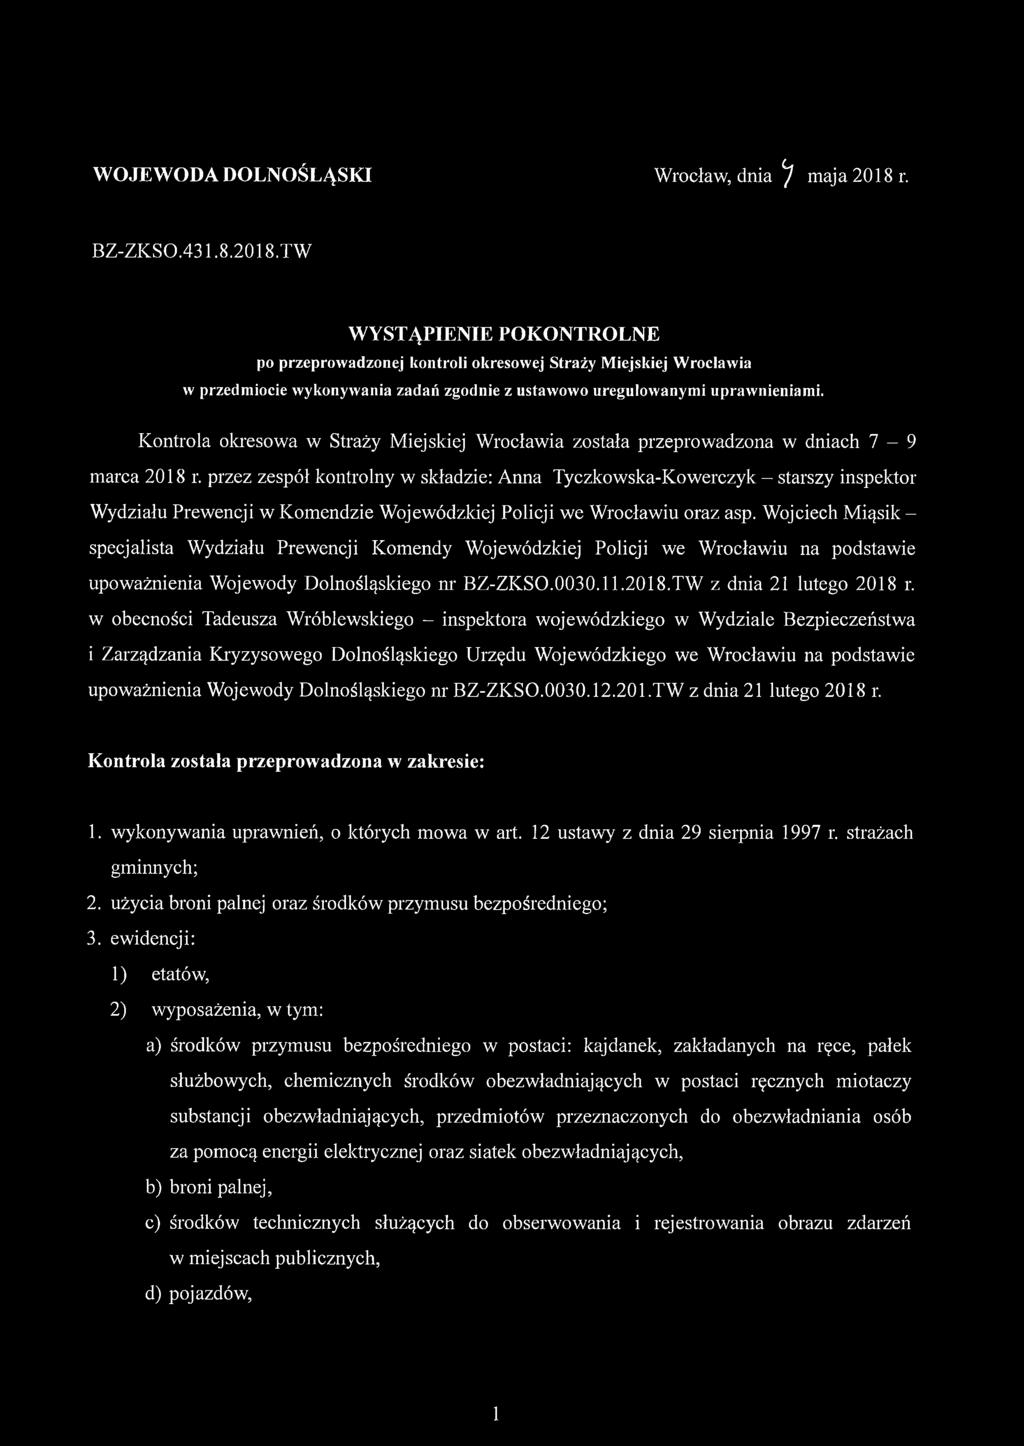 Kontrola okresowa w Straży Miejskiej Wrocławia została przeprowadzona w dniach 7-9 marca 2018 r.